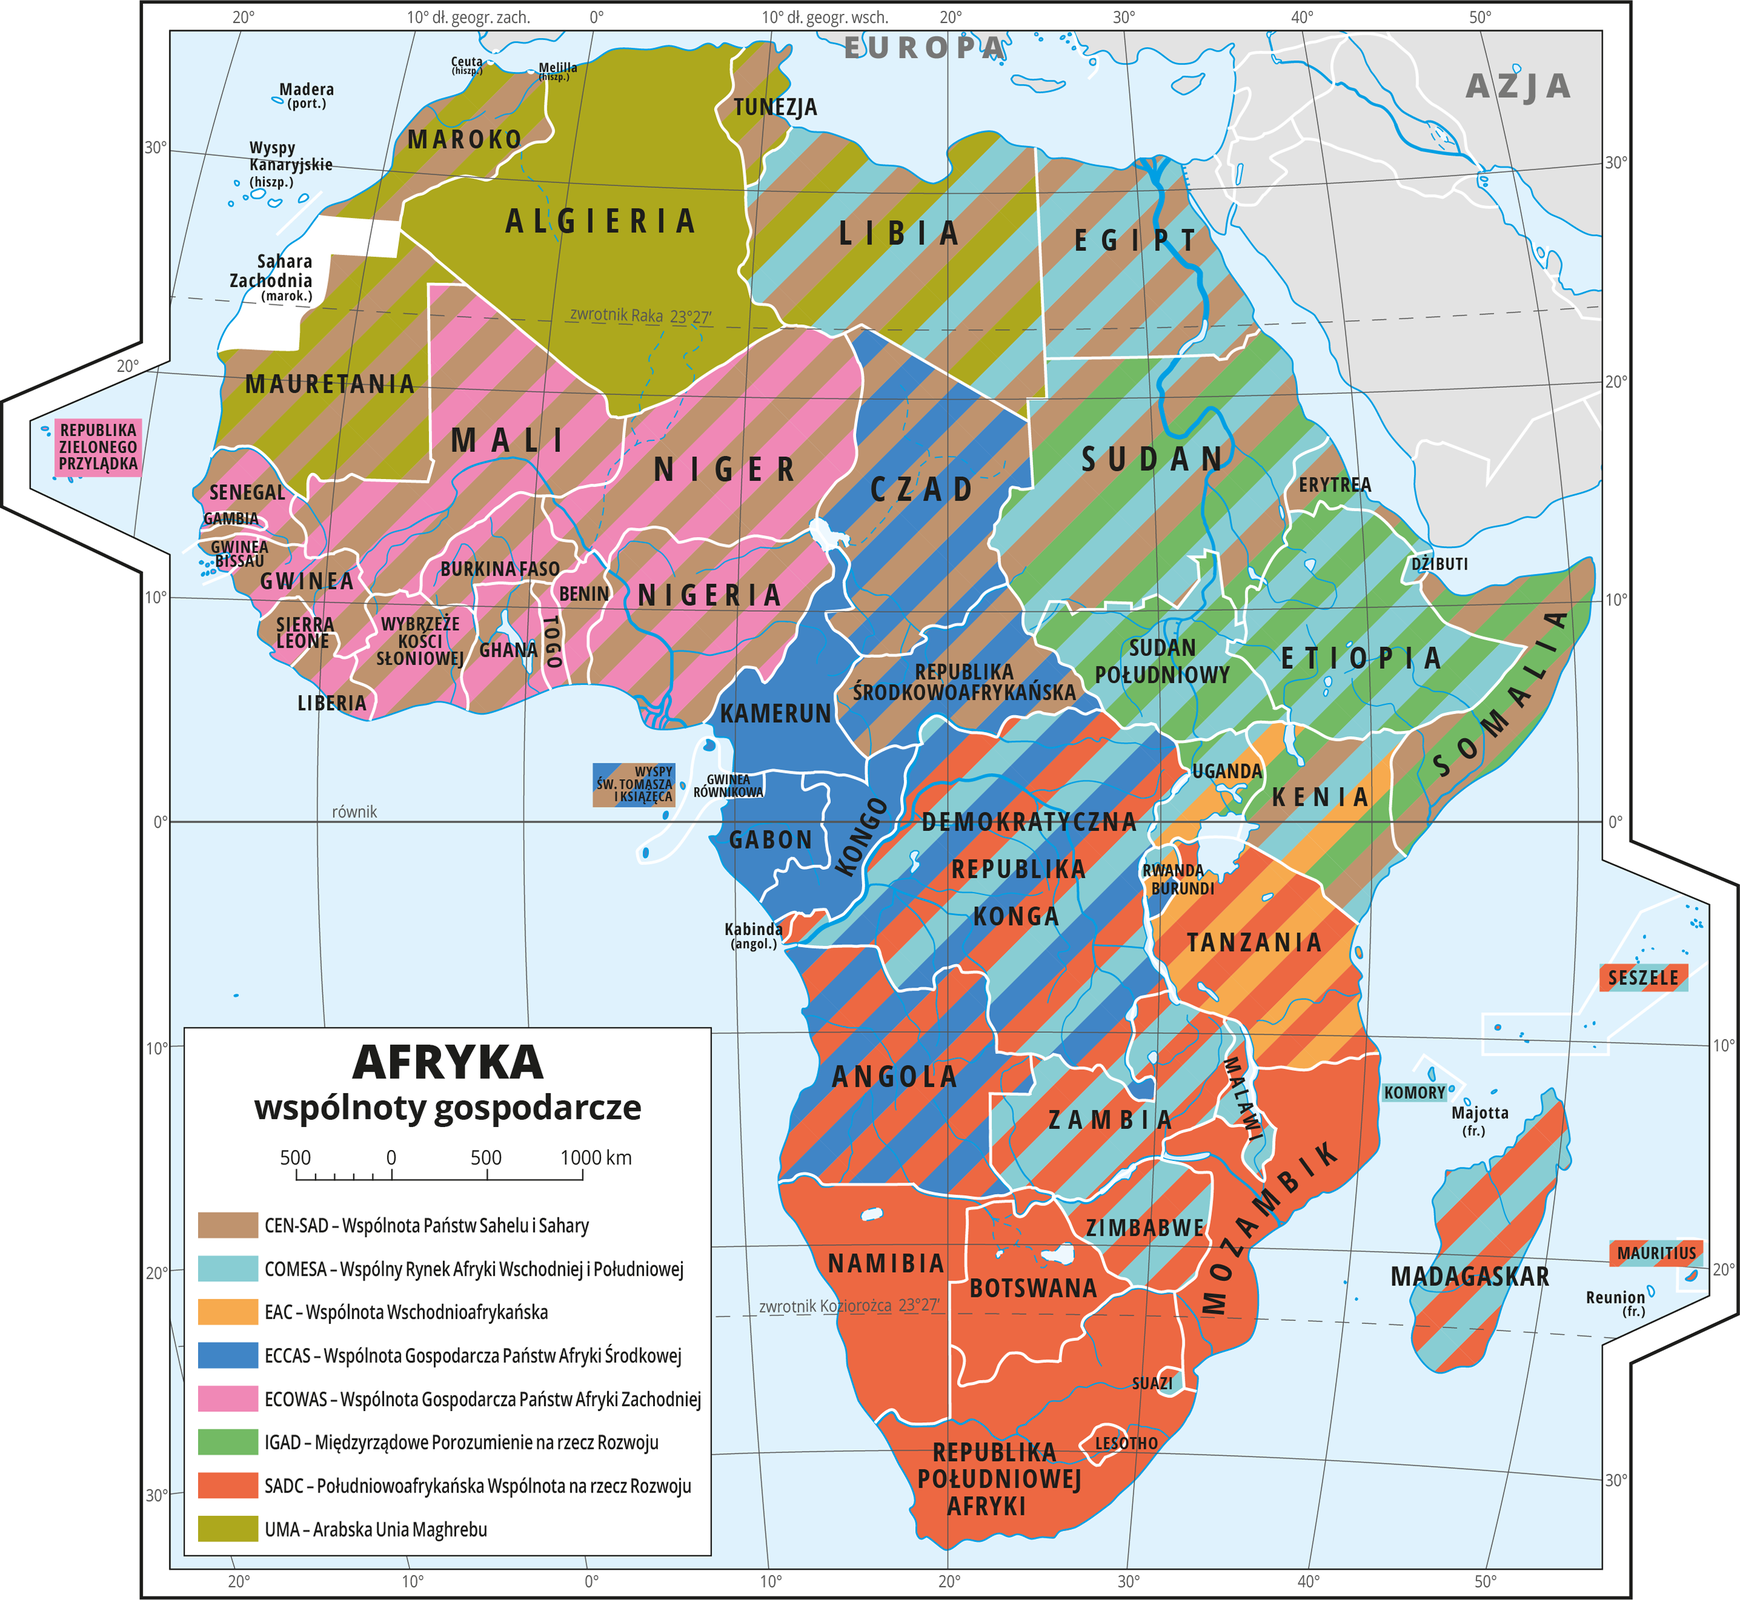 Ilustracja przedstawia mapę Afryki. Wody zaznaczono kolorem niebieskim. Opisano nazwy państw.Na mapie za pomocą ośmiu kolorów oznaczono państwa członkowskie wspólnot gospodarczych. Kolory rozłożone są nierównomiernie, w wielu miejscach występują wielokolorowe paski, co oznacza, że dane państwo jest członkiem wielu organizacji. Mapa pokryta jest równoleżnikami i południkami. Dookoła mapy w białej ramce opisano współrzędne geograficzne co dziesięć stopni.Po lewej stronie mapy objaśniono kolory użyte na mapie. Na mapie przedstawiono następujące organizacje: CEN-SAD – Wspólnota Państw Sahelu i Sahary, COMESA – Wspólny Rynek Afryki Wschodniej I Południowej, EAC – Wspólnota Wschodnioafrykańska, ECCAS – Wspólnota Gospodarcza Państw Afryki Środkowej, ECOWAS – Wspólnota Gospodarcza Państw Afryki Zachodniej, IGAD – Międzyrządowe Porozumienie na rzecz Rozwoju, SADC – Południowoafrykańska Wspólnota na rzecz Rozwoju, UMA – Arabska Unia Maghrebu.